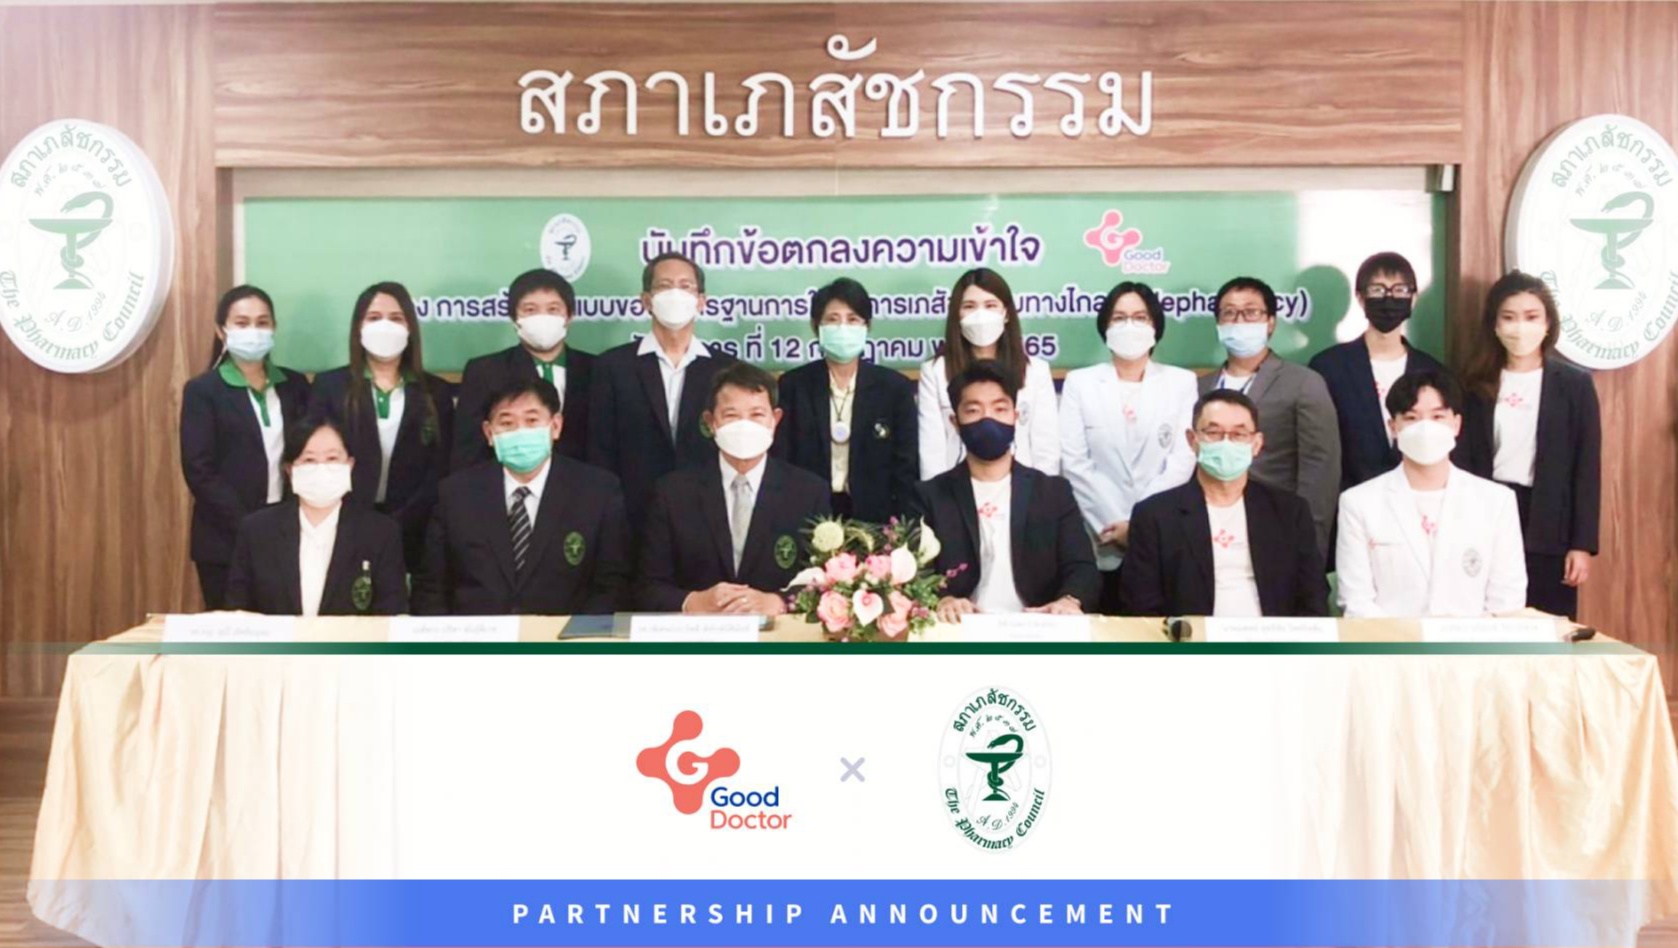 กู๊ด ด็อกเตอร์ เทคโนโลยี (ประเทศไทย) ลงนามบันทึกข้อตกลงความร่วมมือ (MOU) กับ สภาเภสัชกรรม (The Pharmacy council of thailand; PCT) เพื่อการส่งเสริมการให้บริการเภสัชกรรมทางไกลในประเทศ